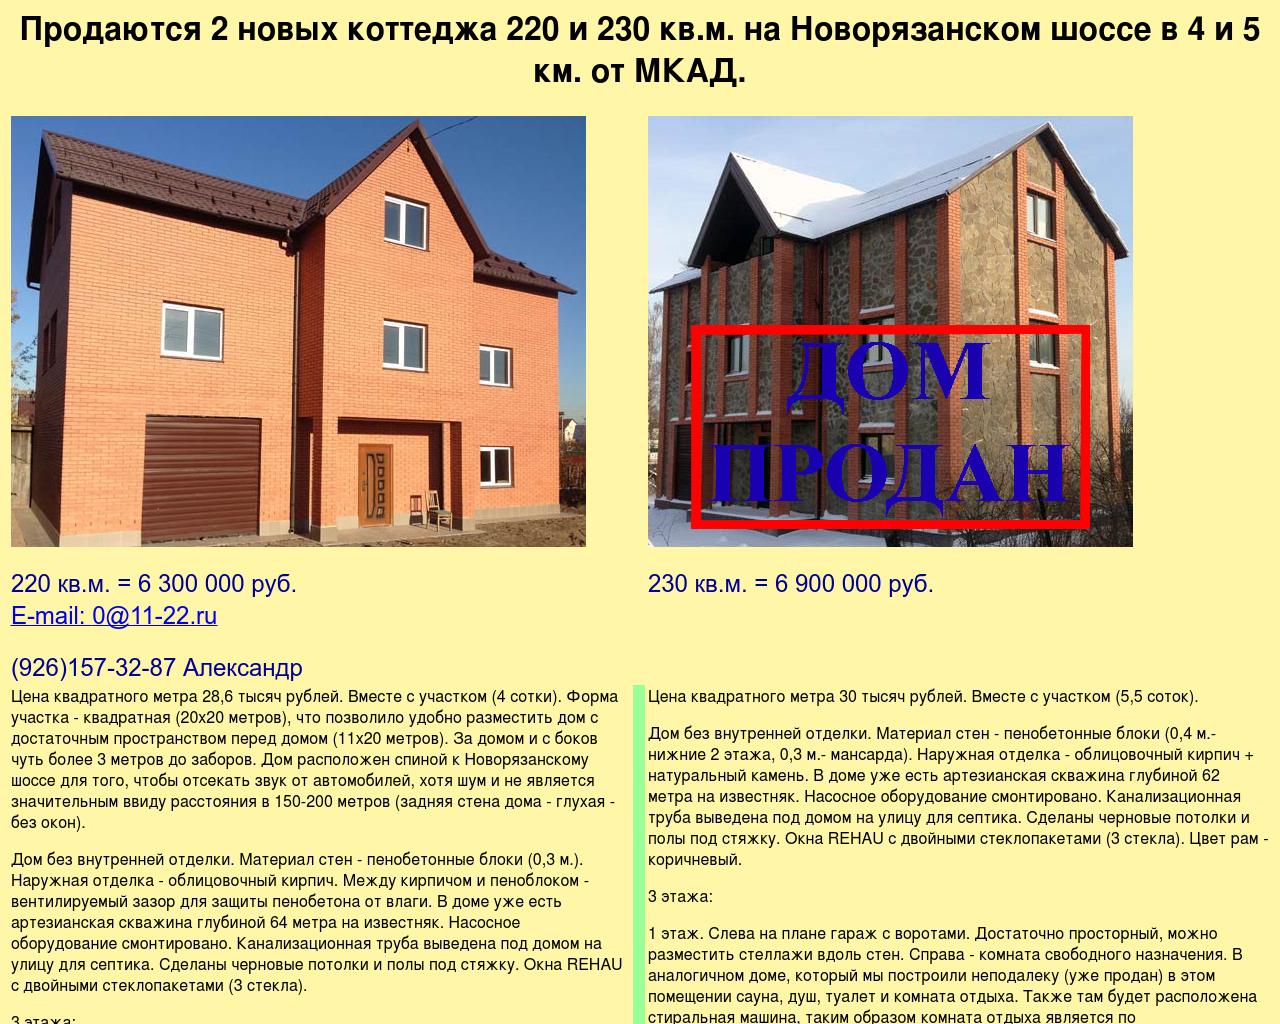 Изображение сайта 11-22.ru в разрешении 1280x1024